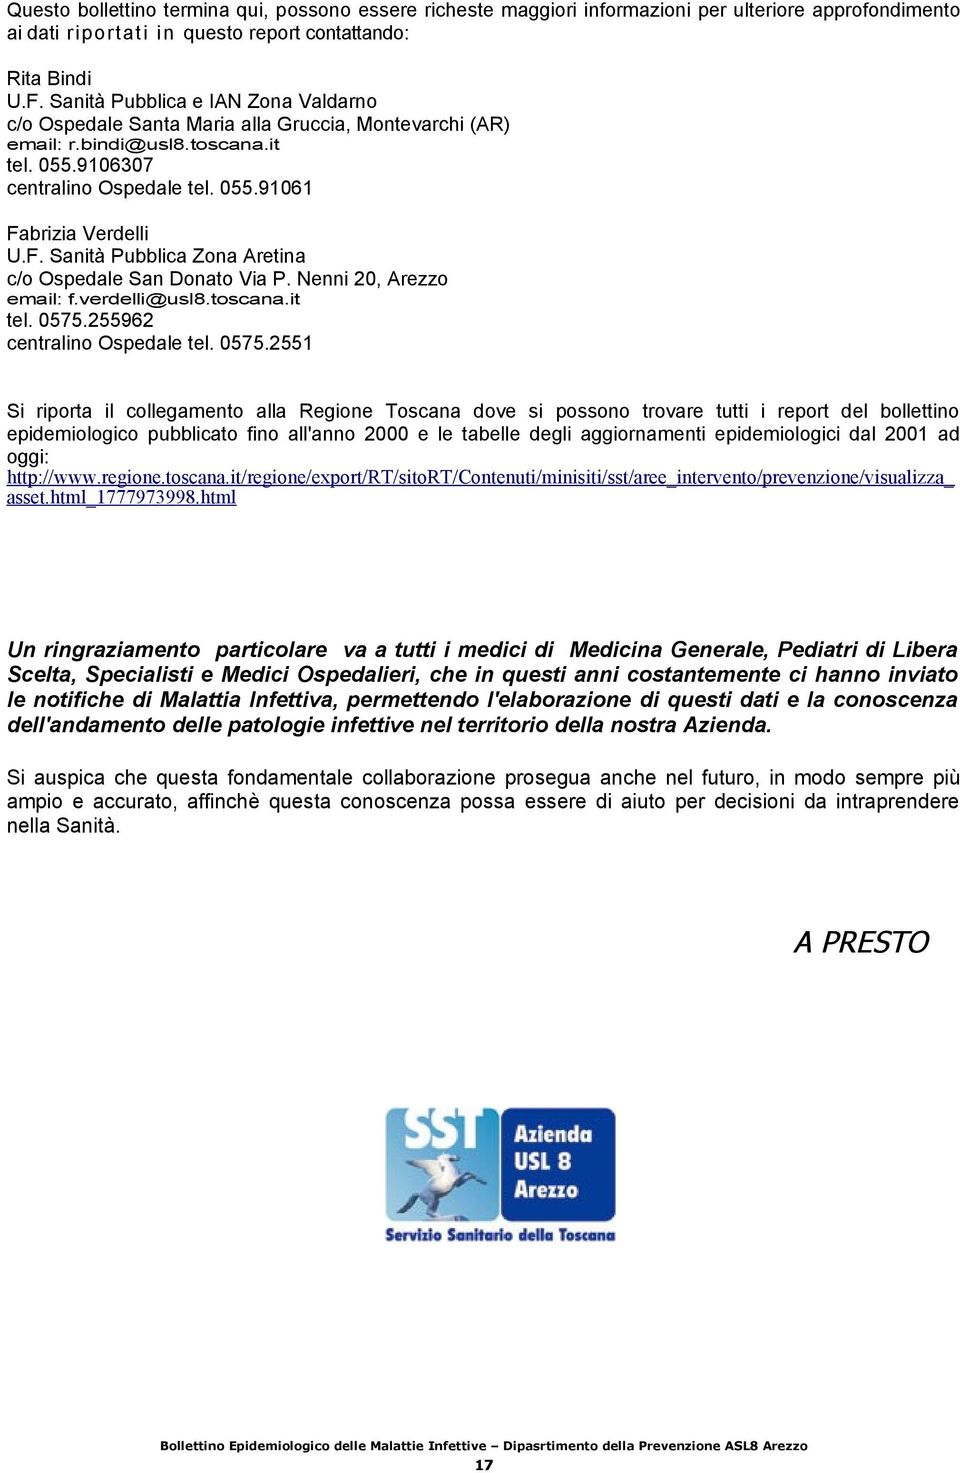 brizia Verdelli U.F. Sanità Pubblica Zona Aretina c/o Ospedale San Donato Via P. Nenni, Arezzo email: f.verdelli@usl8.toscana.it tel. 7.